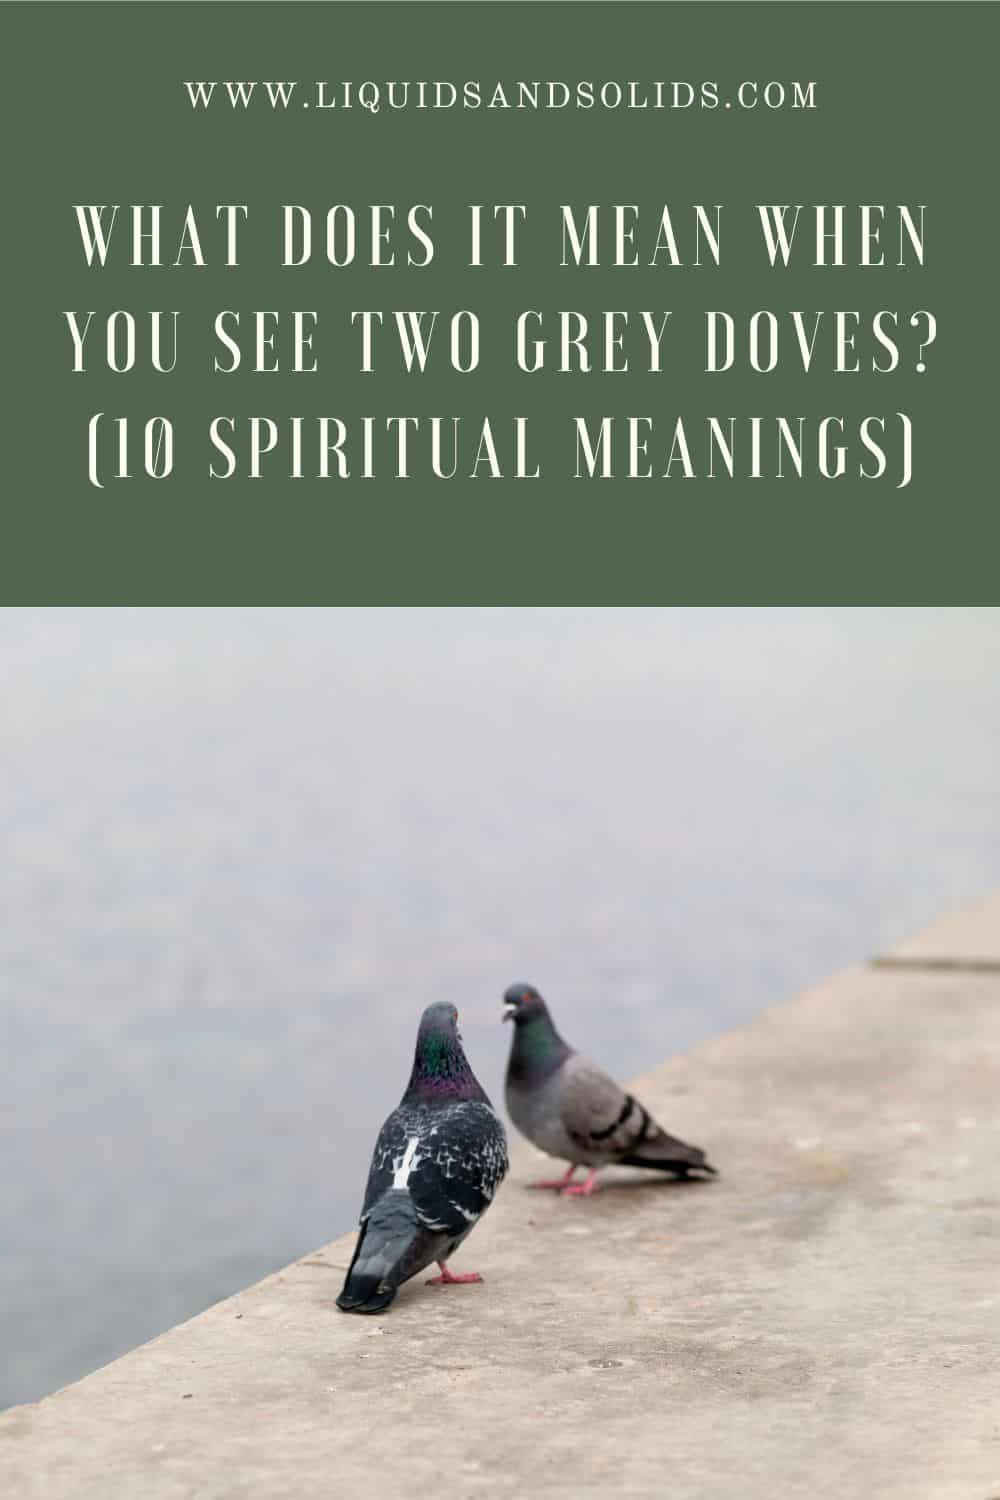  Mit jelent, ha két szürke galambot látsz? (10 spirituális jelentés)